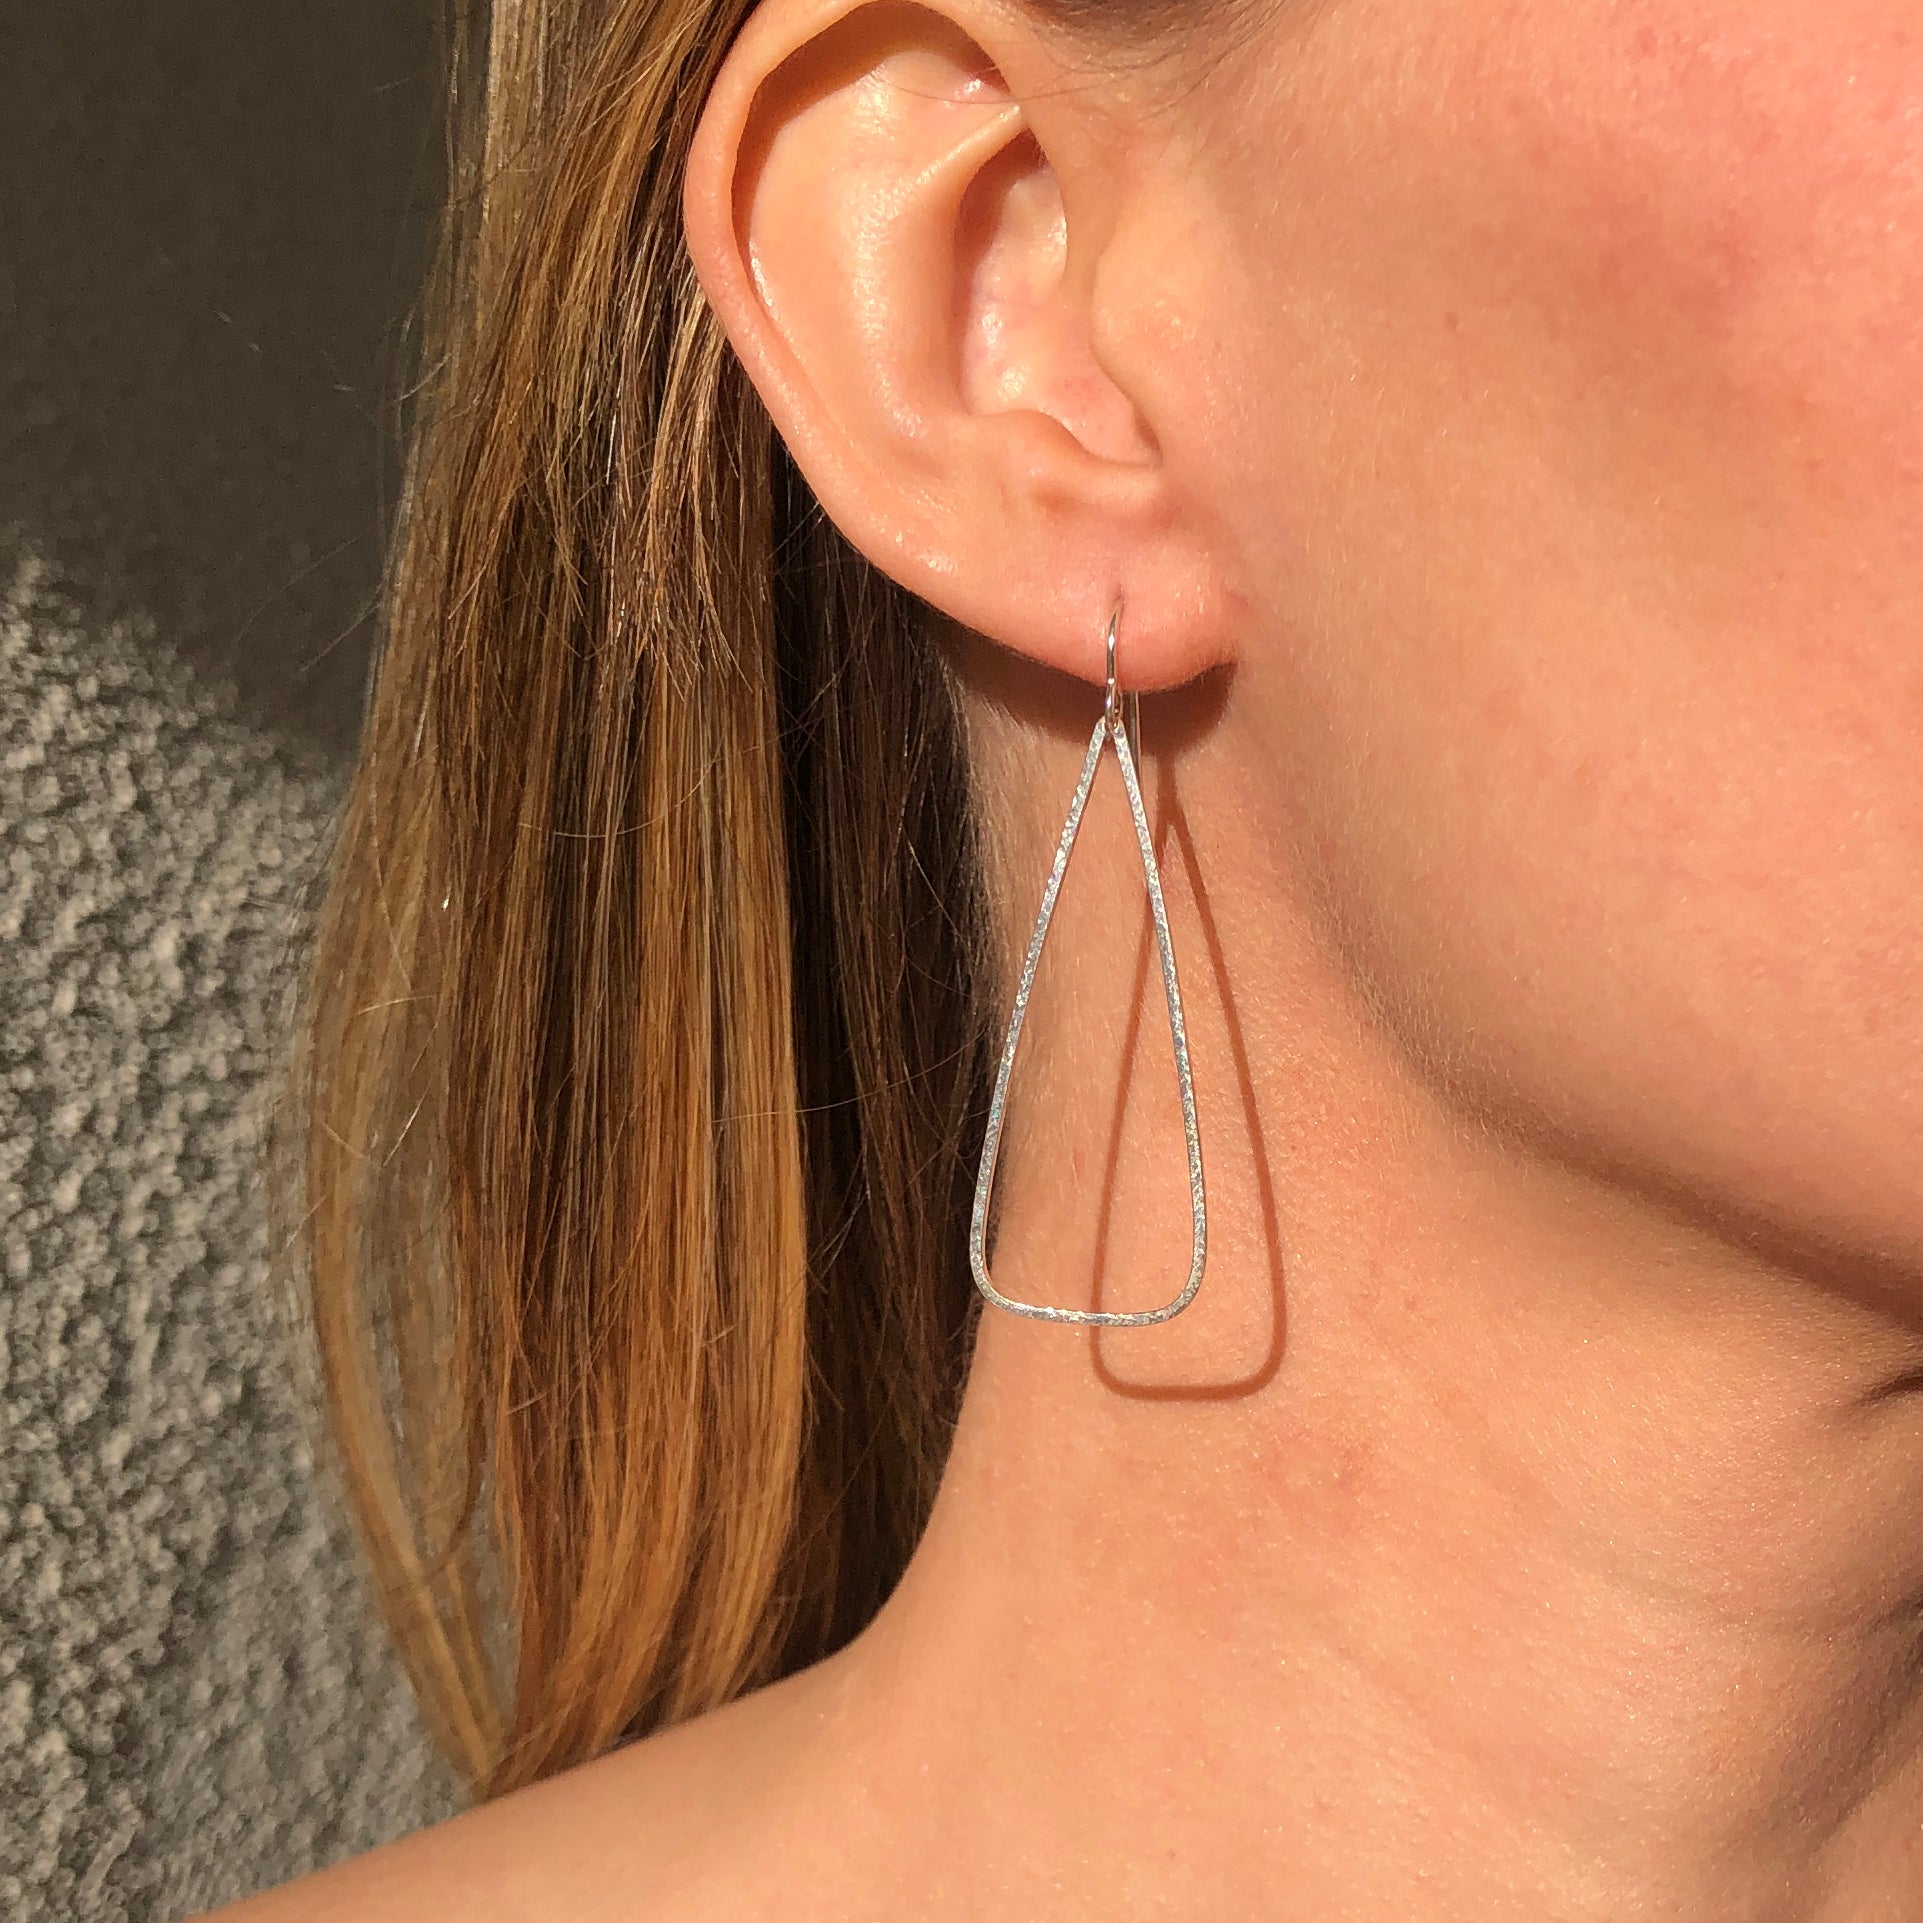 Classic II: Medium Size Round Silver Hoop Earrings – Hoopsanddangles